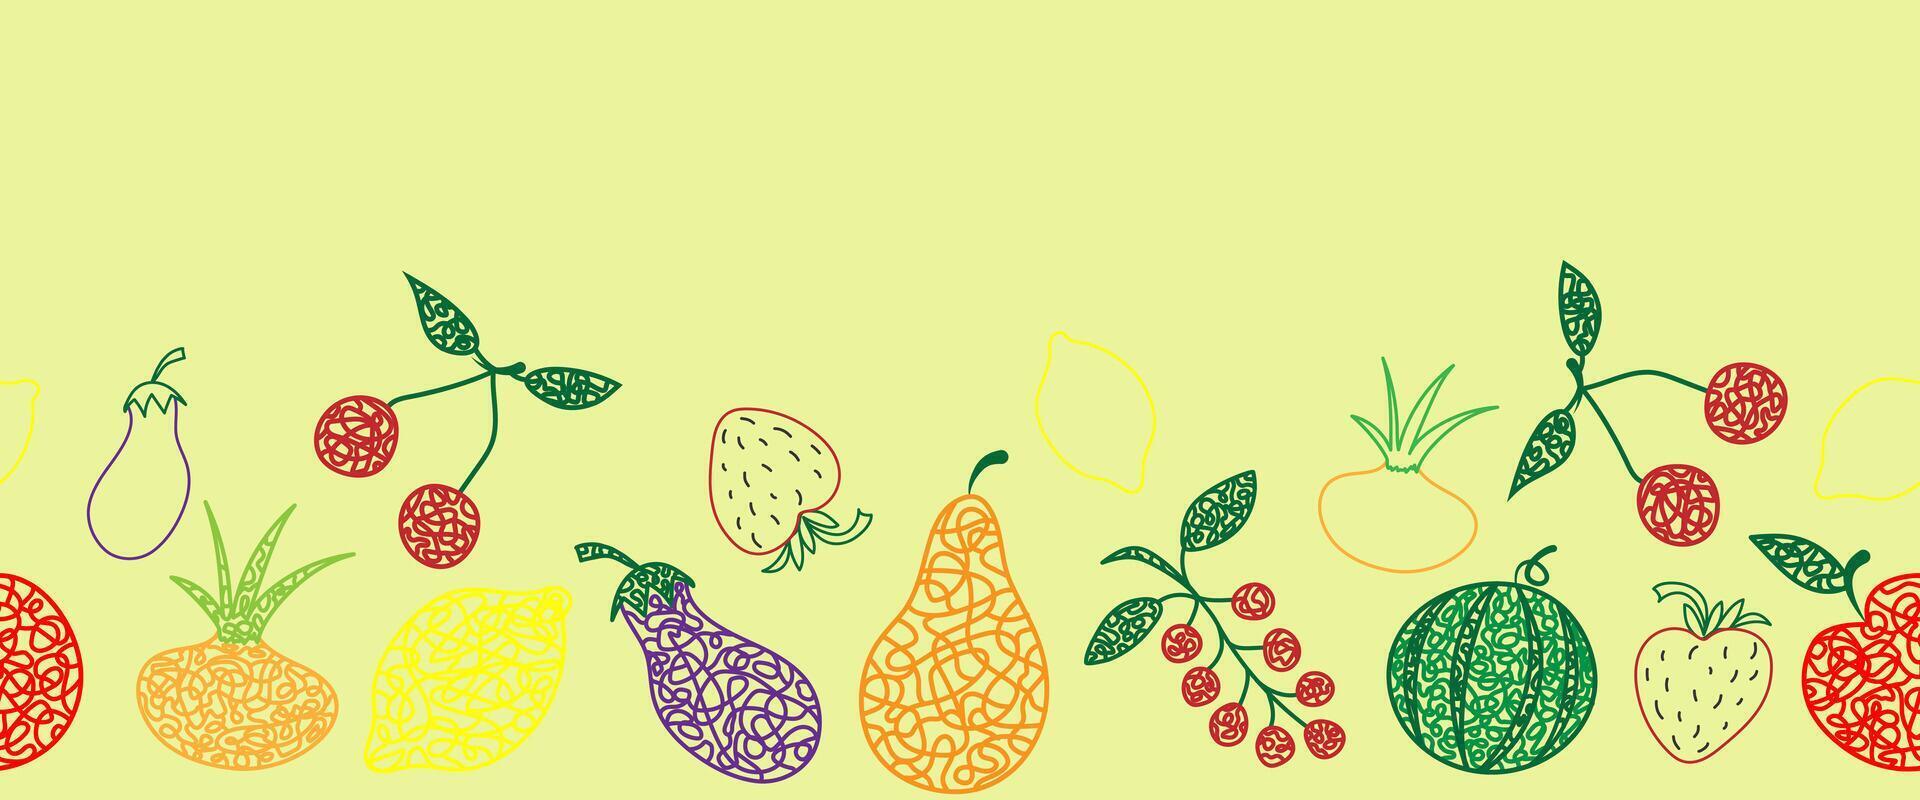 sömlös mönster gräns med hand dragen vattenmelon, körsbär, äpple, päron, citron, jordgubbe, äggplanta, vinbär, lök på gul bakgrund i barns naiv stil. vektor